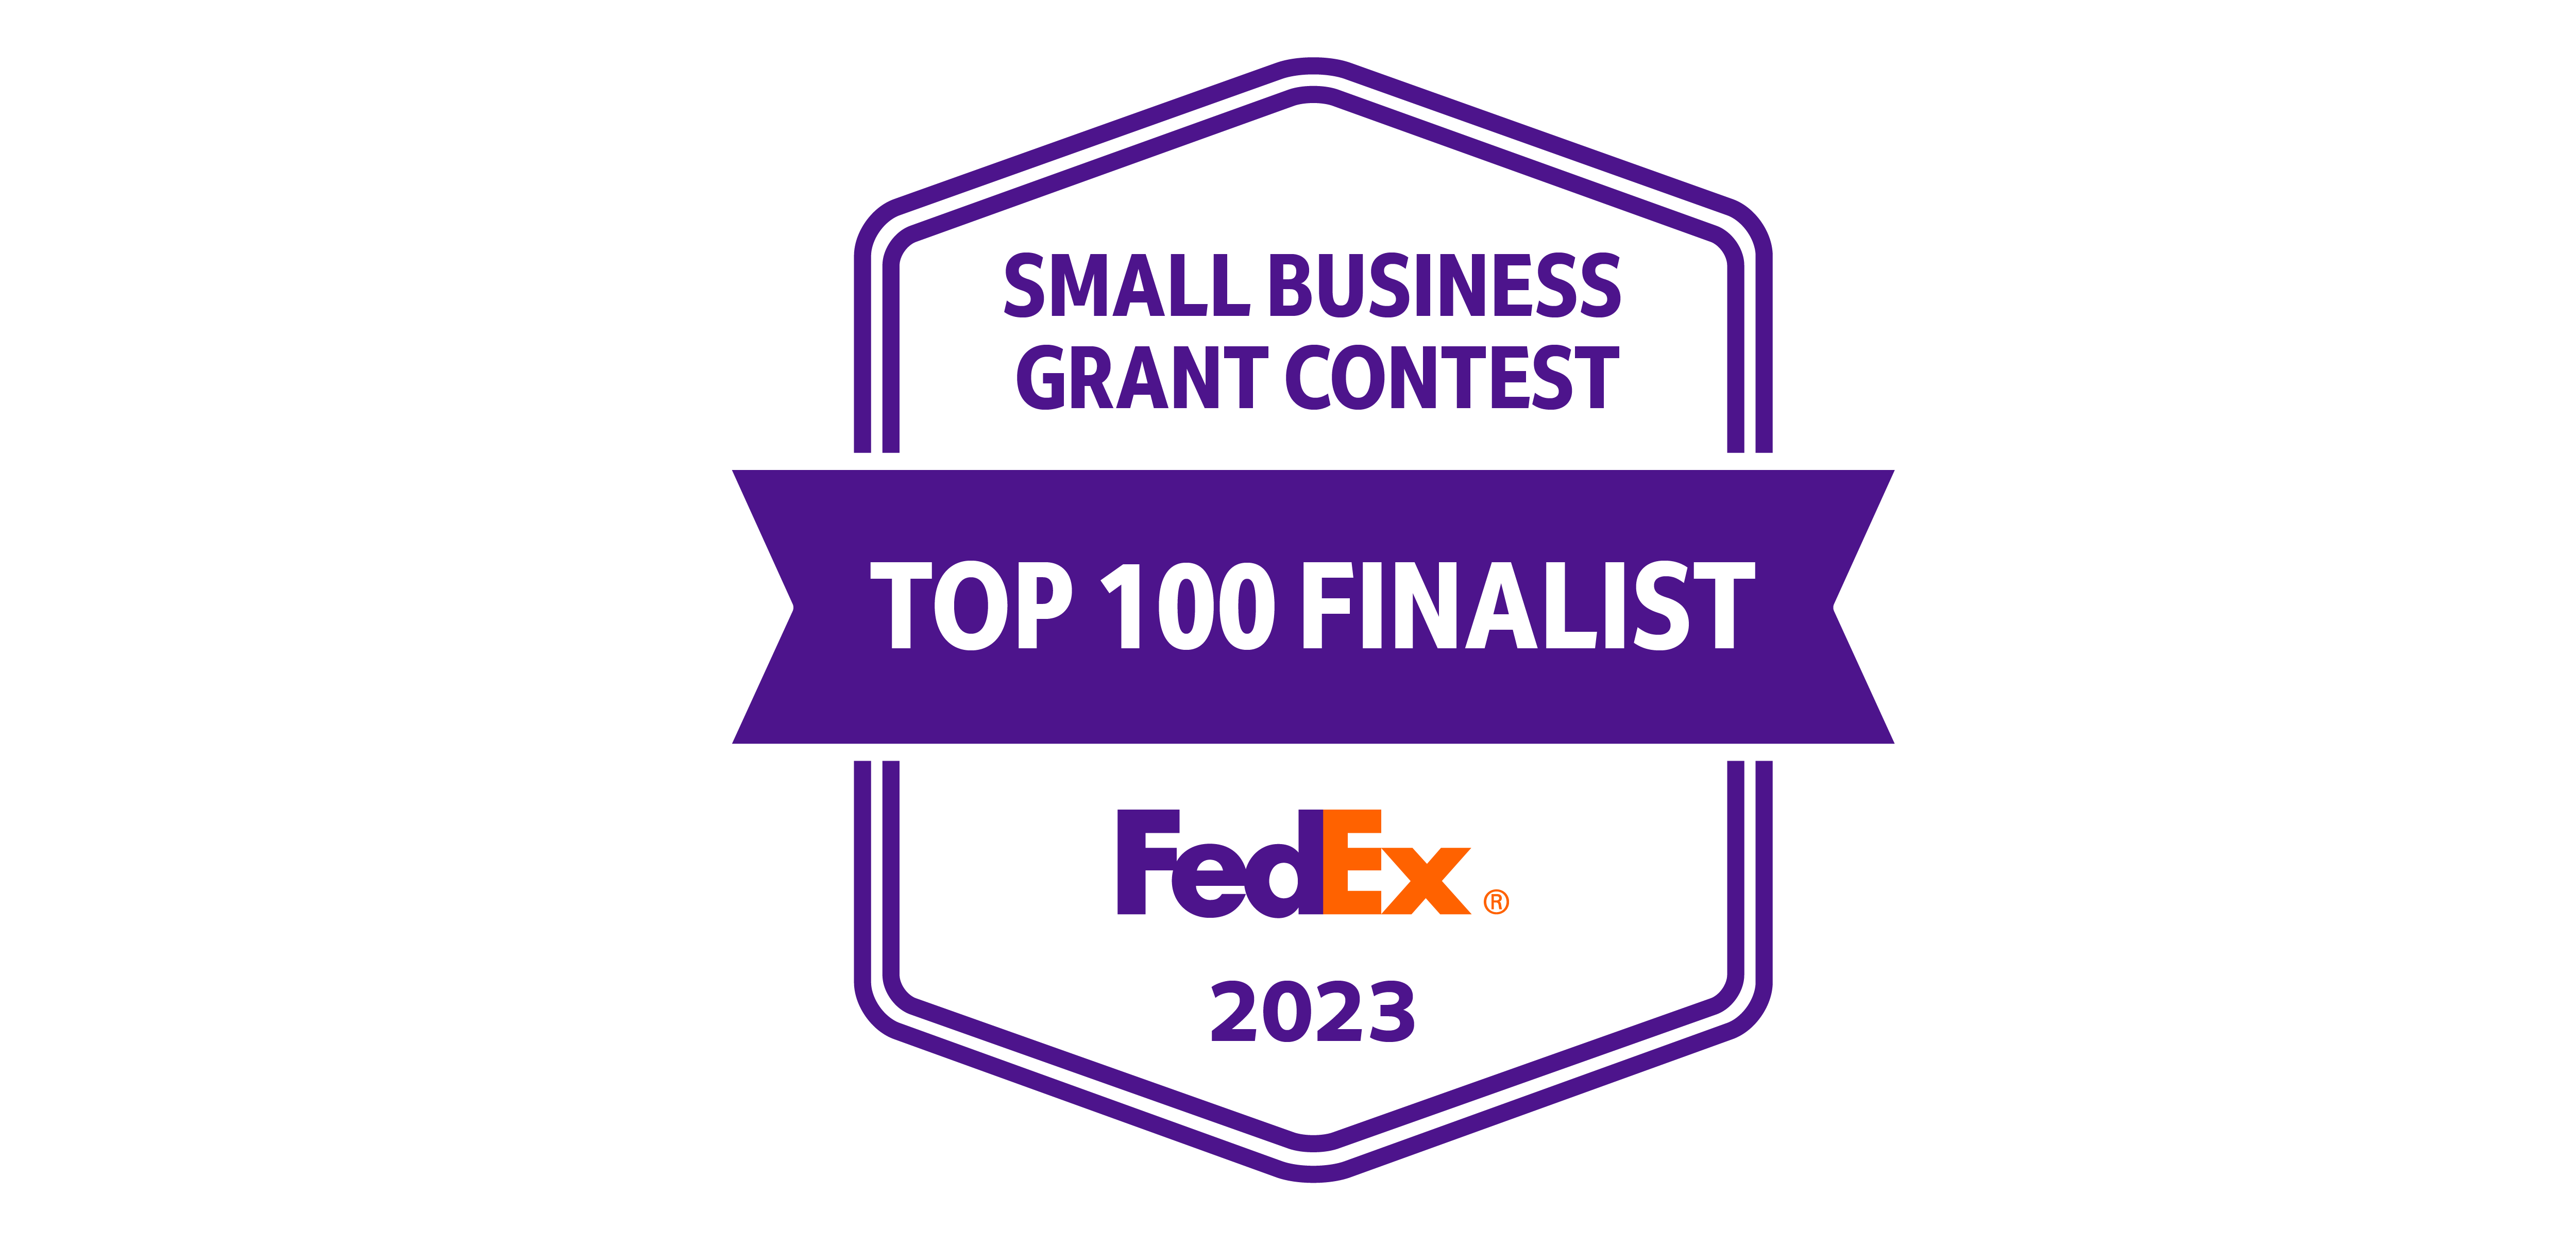 Fedex Grant Top 100 Finalist!